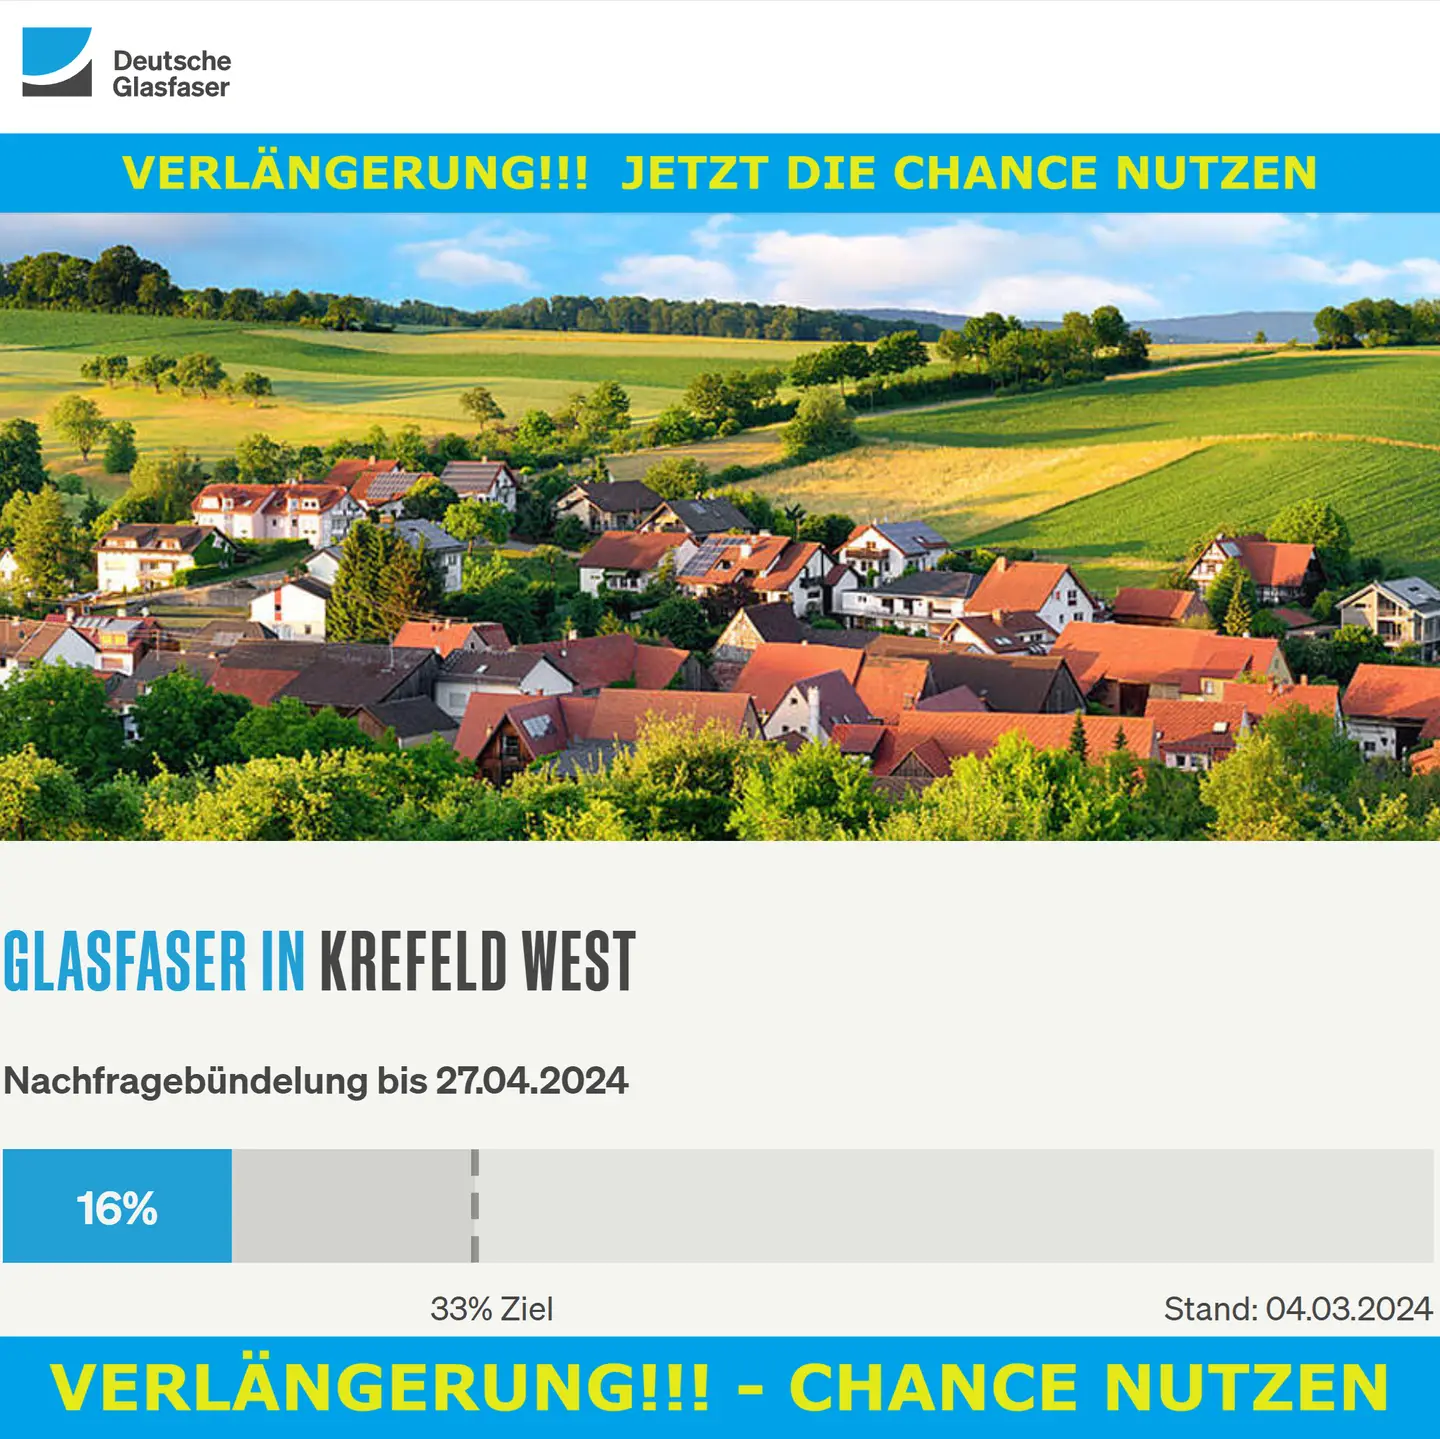 Screenshot von "Deutsche Glasfaser", oben DG Logo, ein Landschaftsbild, Schriftzüge "Glasfaser in Krefeld-West", Nachfragebündelung bis 27.4.2024, Anzeige der aktuellen Prozentzahl 16%, von 33% Ziel - VERLÄNGERUNGSHINWEISE oben und unten